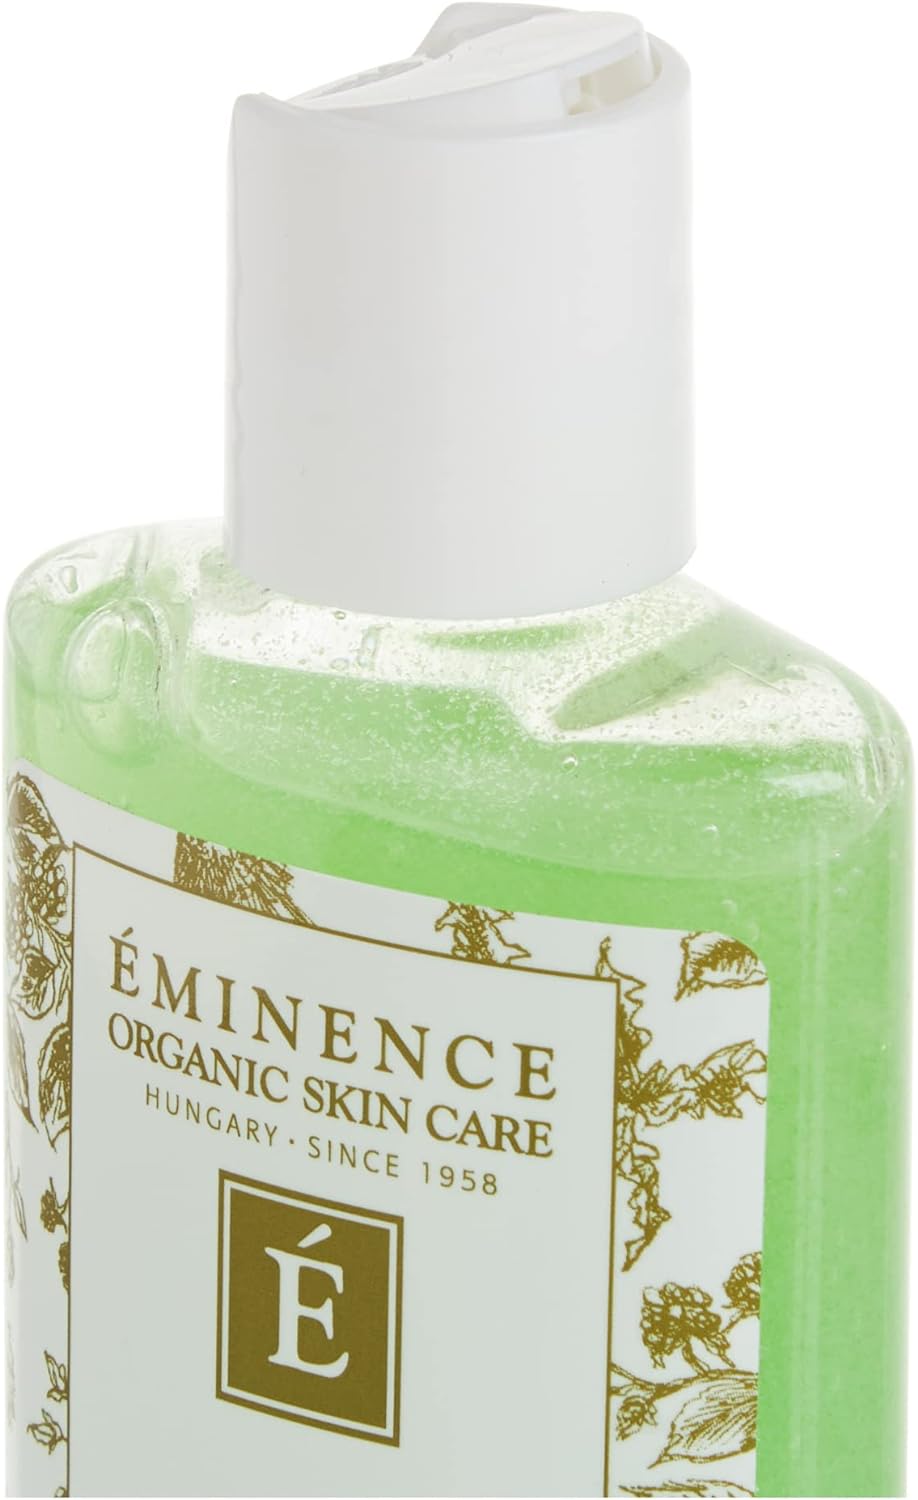 Eminence Organic Skincare Citrus exfoliating wash 4.2oz, 4.2 Ounce